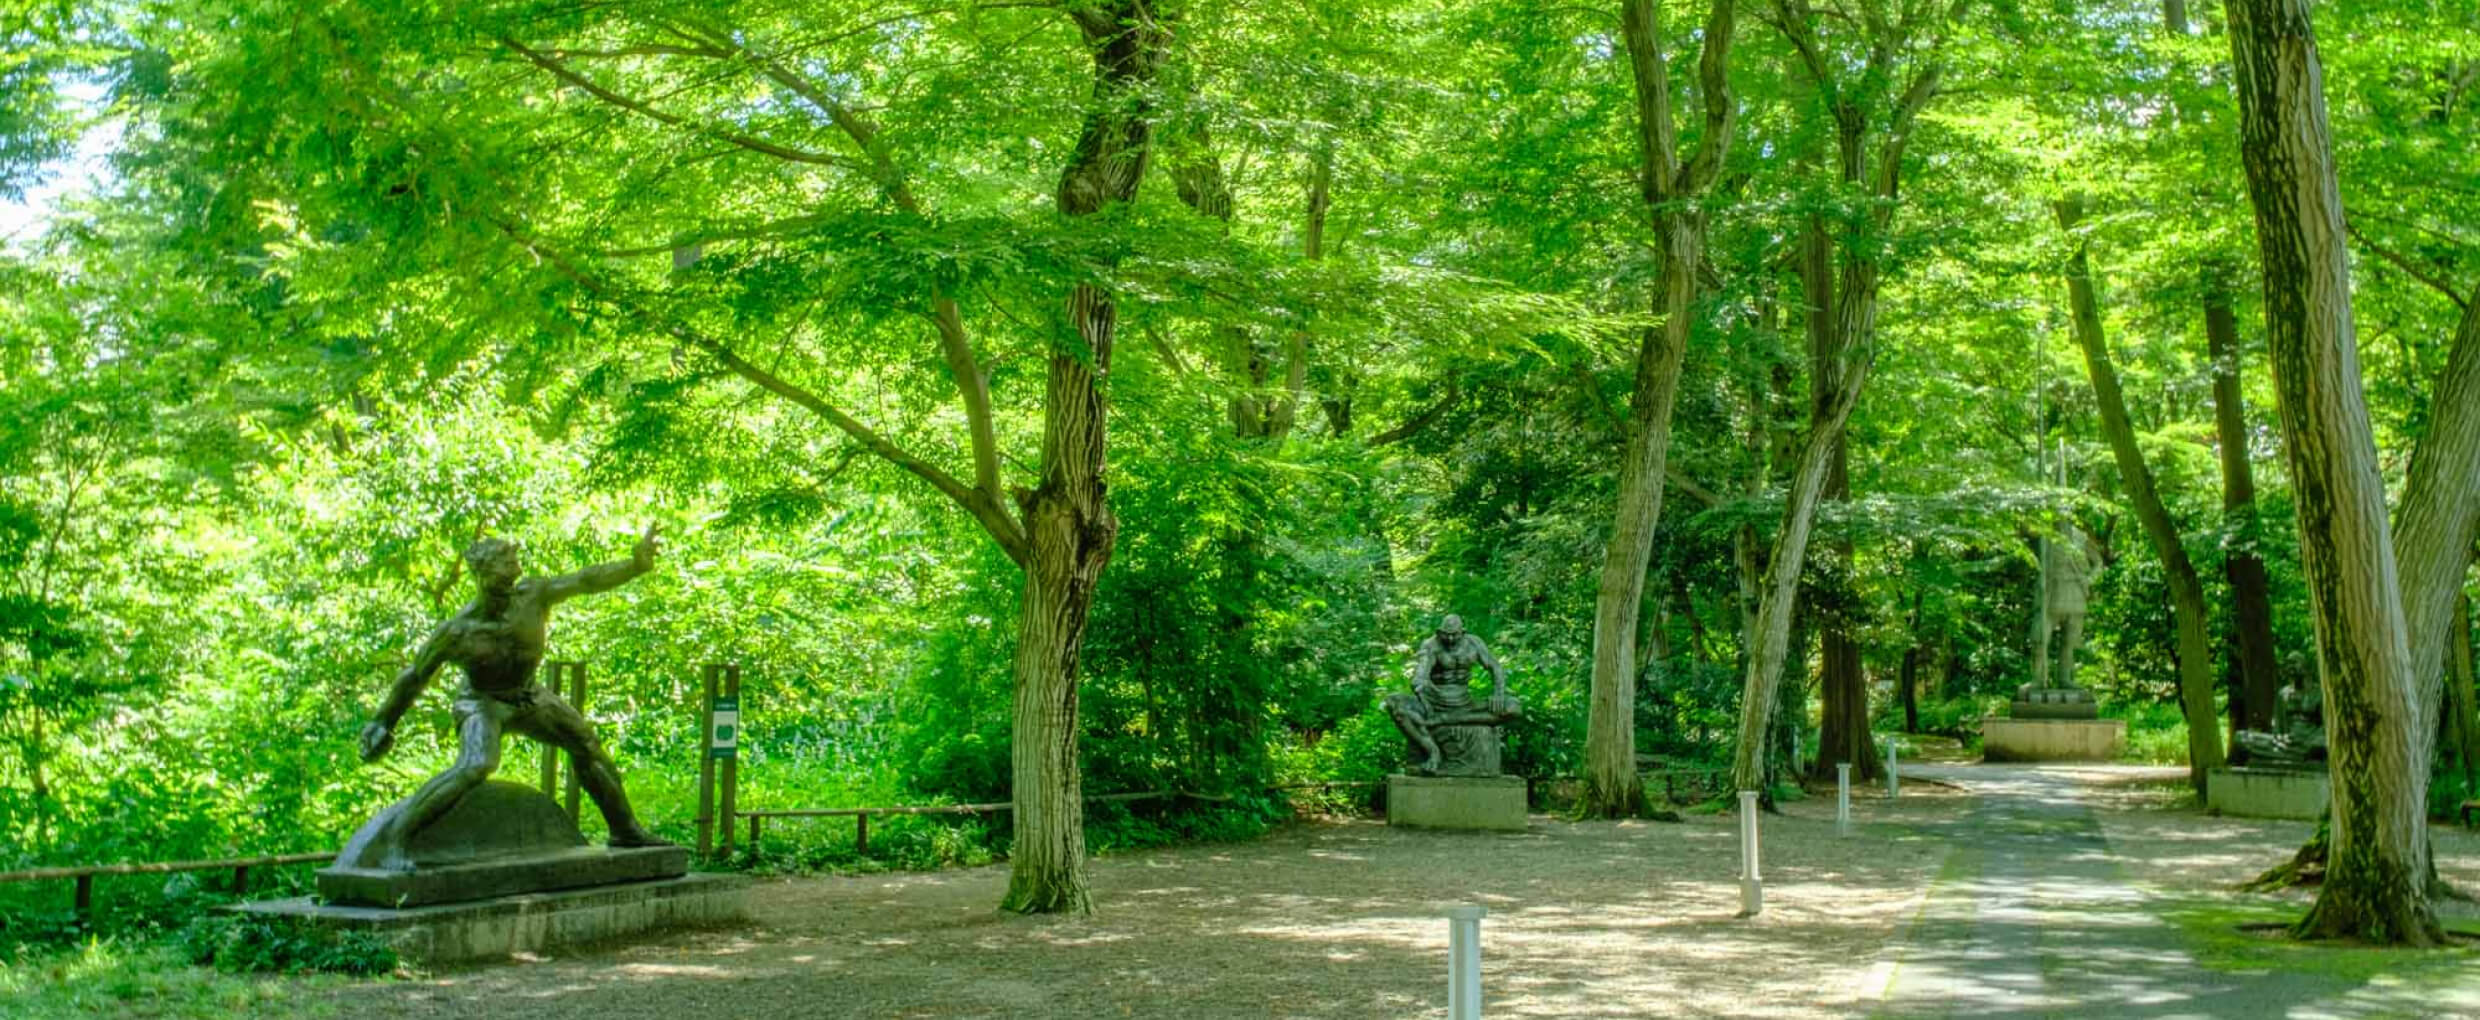 長崎の平和記念像を制作した彫刻家・北村西望の作品200点あまりを展示する「彫刻園」